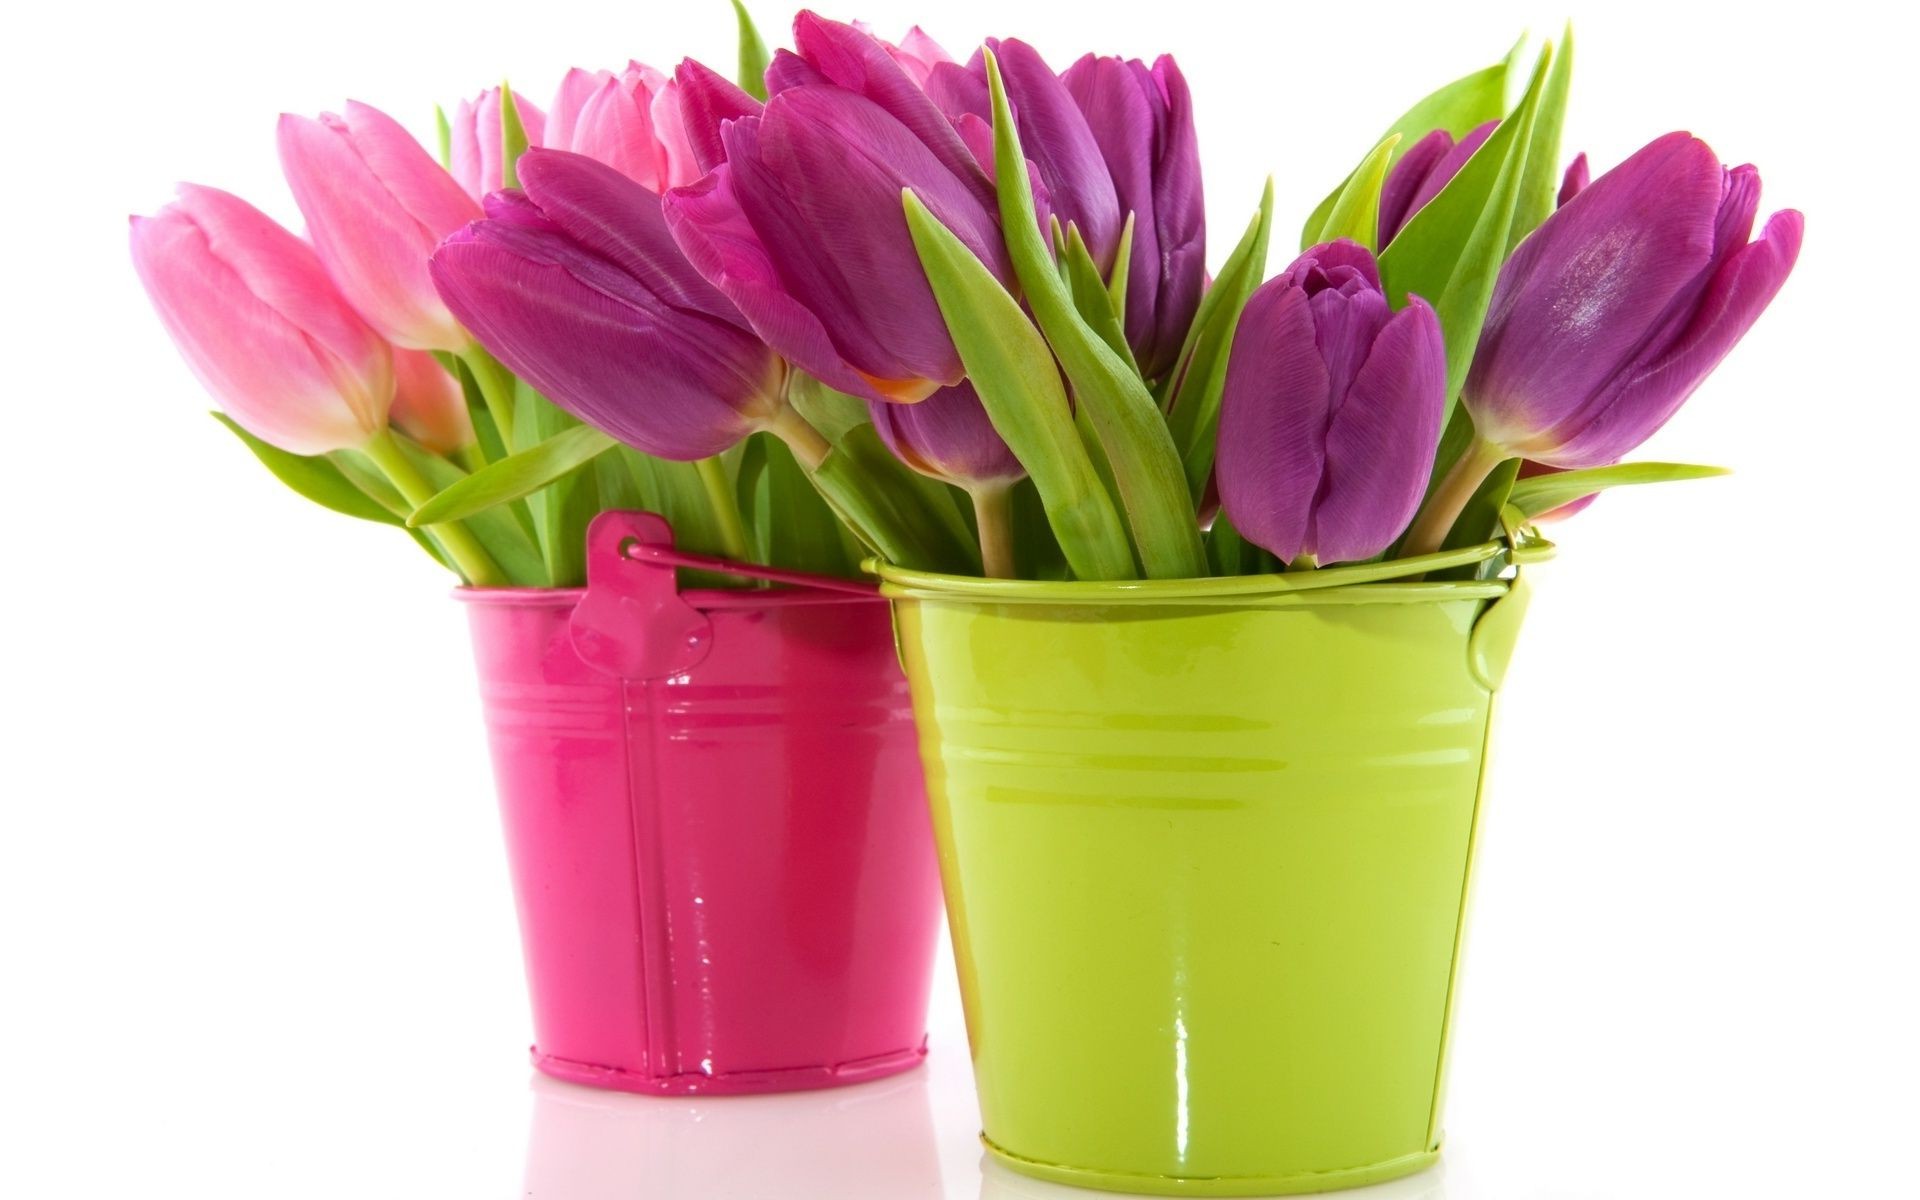 тюльпаны природа пасха цветок яркий лист изолированные тюльпан флора букет любовь ваза цветочные цвет романтика подарок